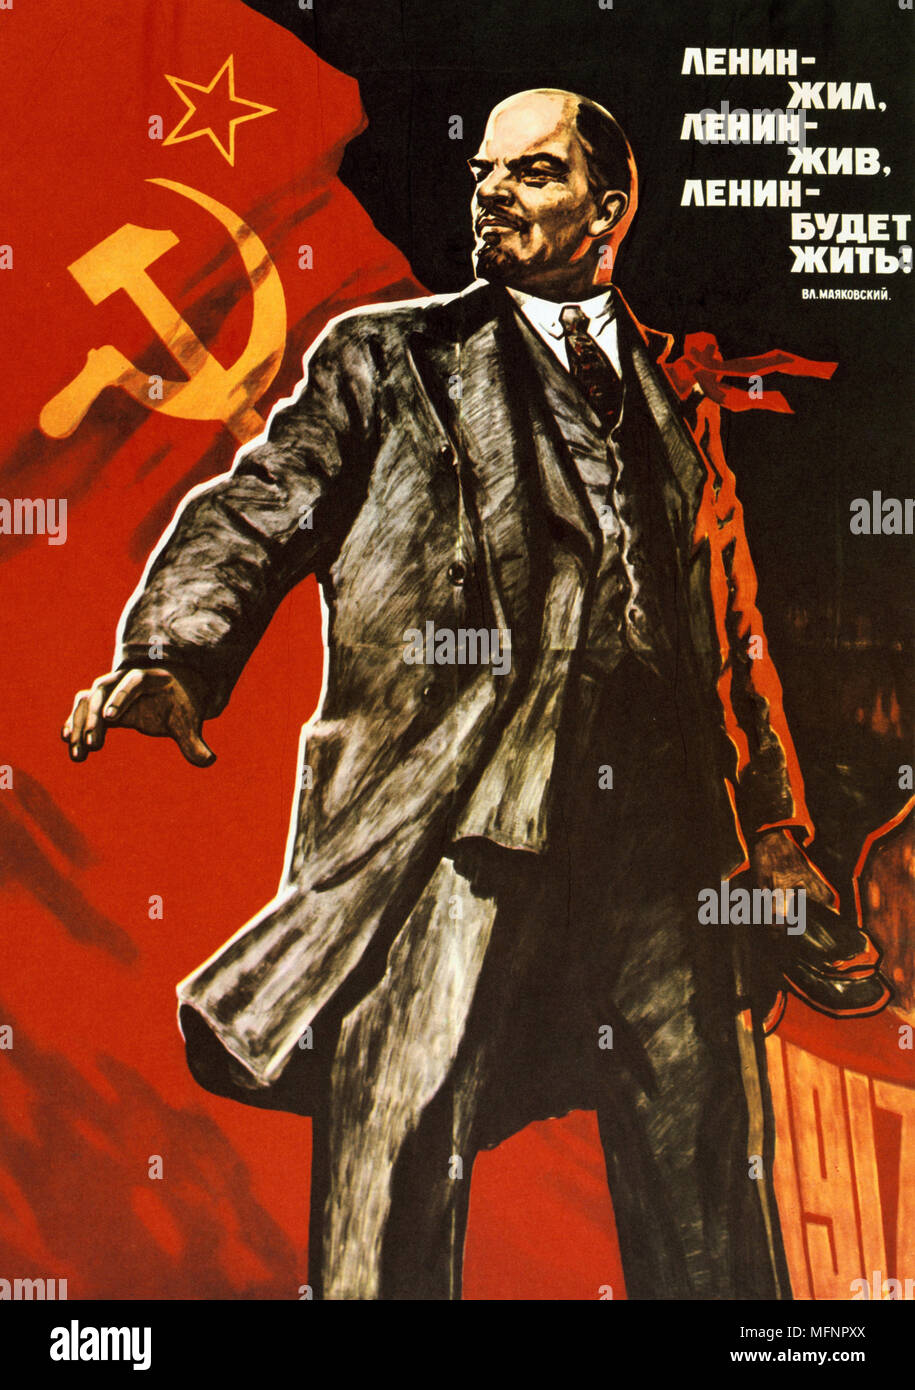 Lenin lived, Lenin lives, Long live Lenin', Soviet propaganda poster by Viktor Semenovich Ivanov. Soviet Russia USSR  Communism Communist Stock Photo